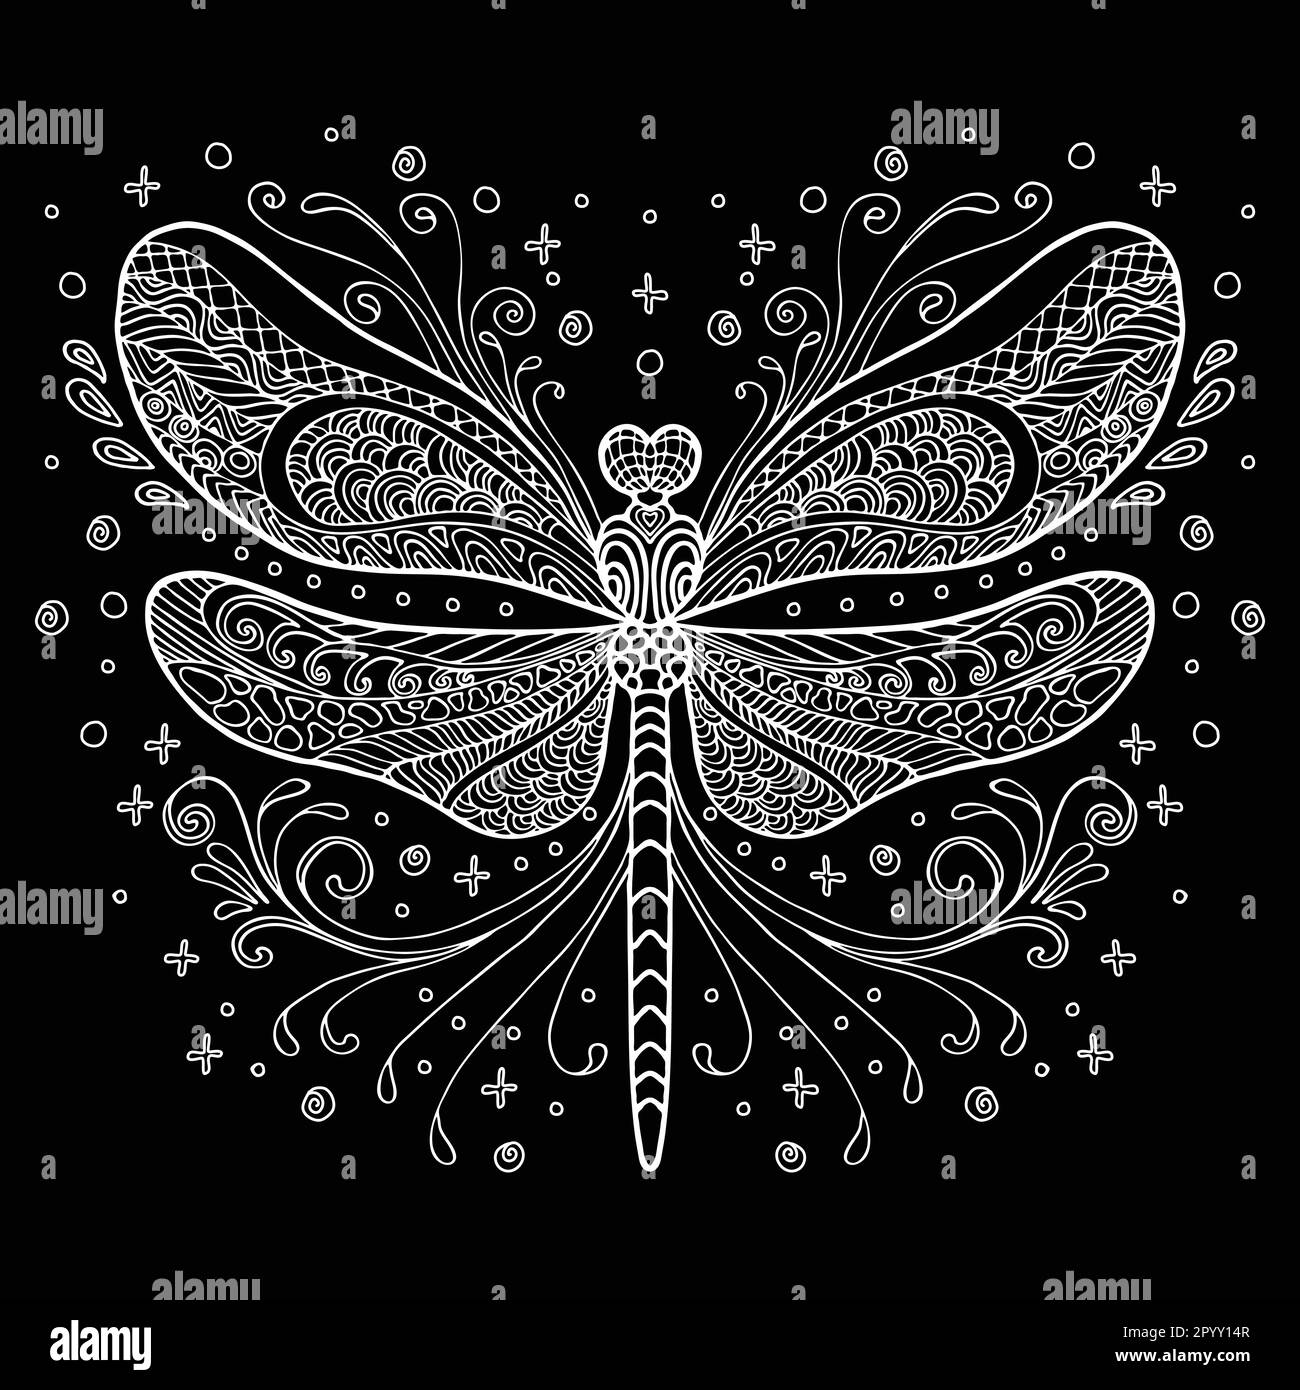 Vettore decorativo doodle dragonfly ornamentale. Illustrazione vettoriale astratta del contorno bianco della libellula isolato su sfondo nero. Illustrazione per Illustrazione Vettoriale